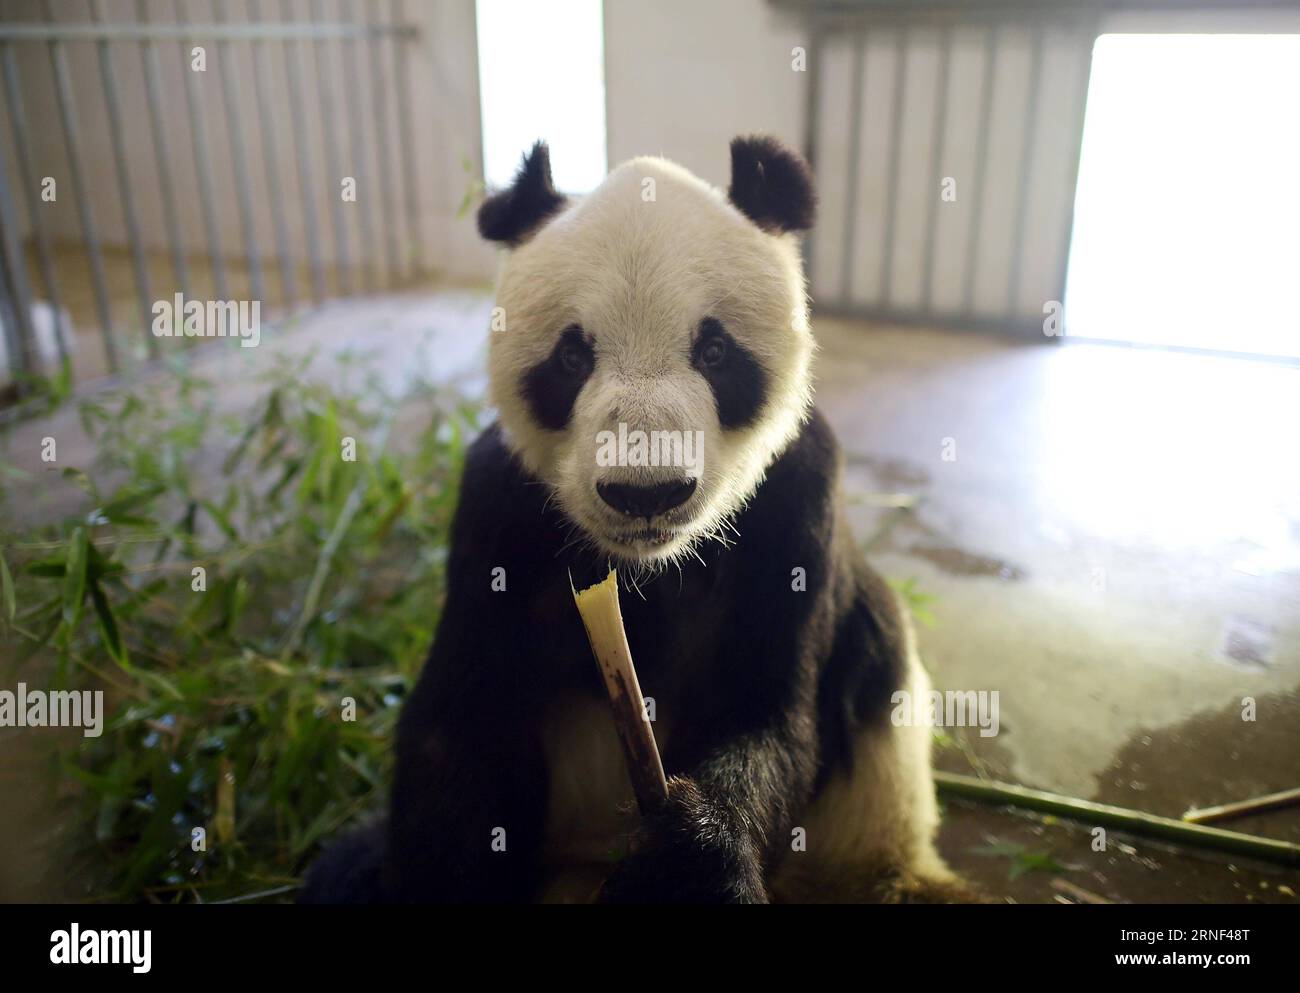 (160717) -- DUJIANGYAN, 17 juillet 2016 -- Panpan, actuellement le plus vieux panda mâle vivant au monde, mange du bambou à la base de Dujiangyan du Centre de conservation et de recherche sur le panda géant dans le sud-ouest de la province du Sichuan, le 15 juillet 2016. Huit pandas géants âgés de plus de 20 ans vivent à la base de Dujiangyan. Car l'âge réel du panda géant équivaut à quatre fois celui des êtres humains, de sorte que l'âge de 20 ans équivaut à 100 ans chez les humains. La base de Dujiangyan, qui entreprend le travail de contrôle et de prévention des maladies pour les pandas, agit également comme infirmière Banque D'Images